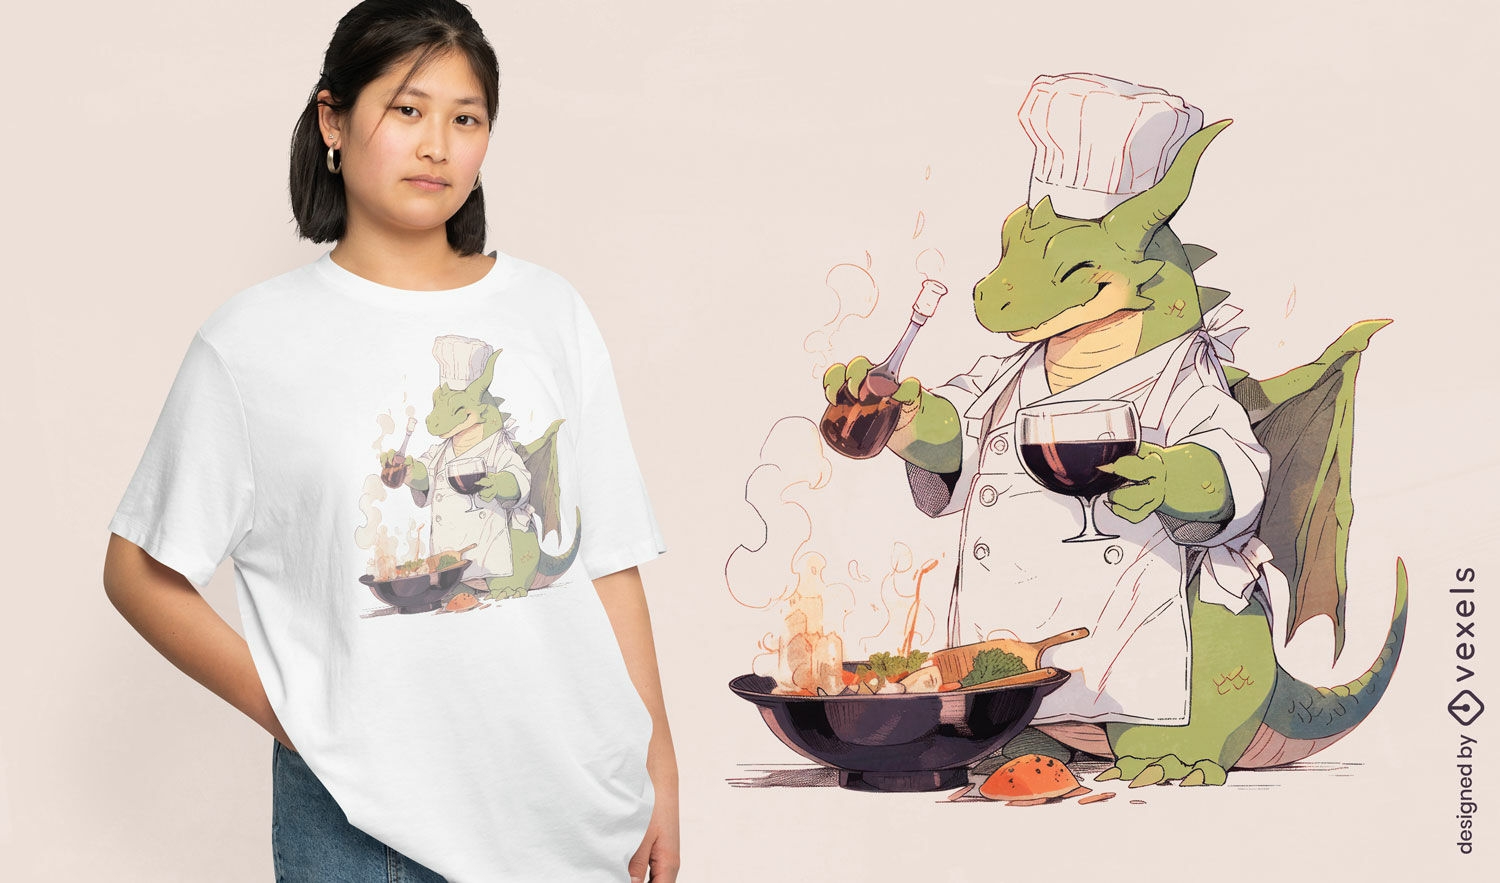 Diseño de camiseta de chef dragón.